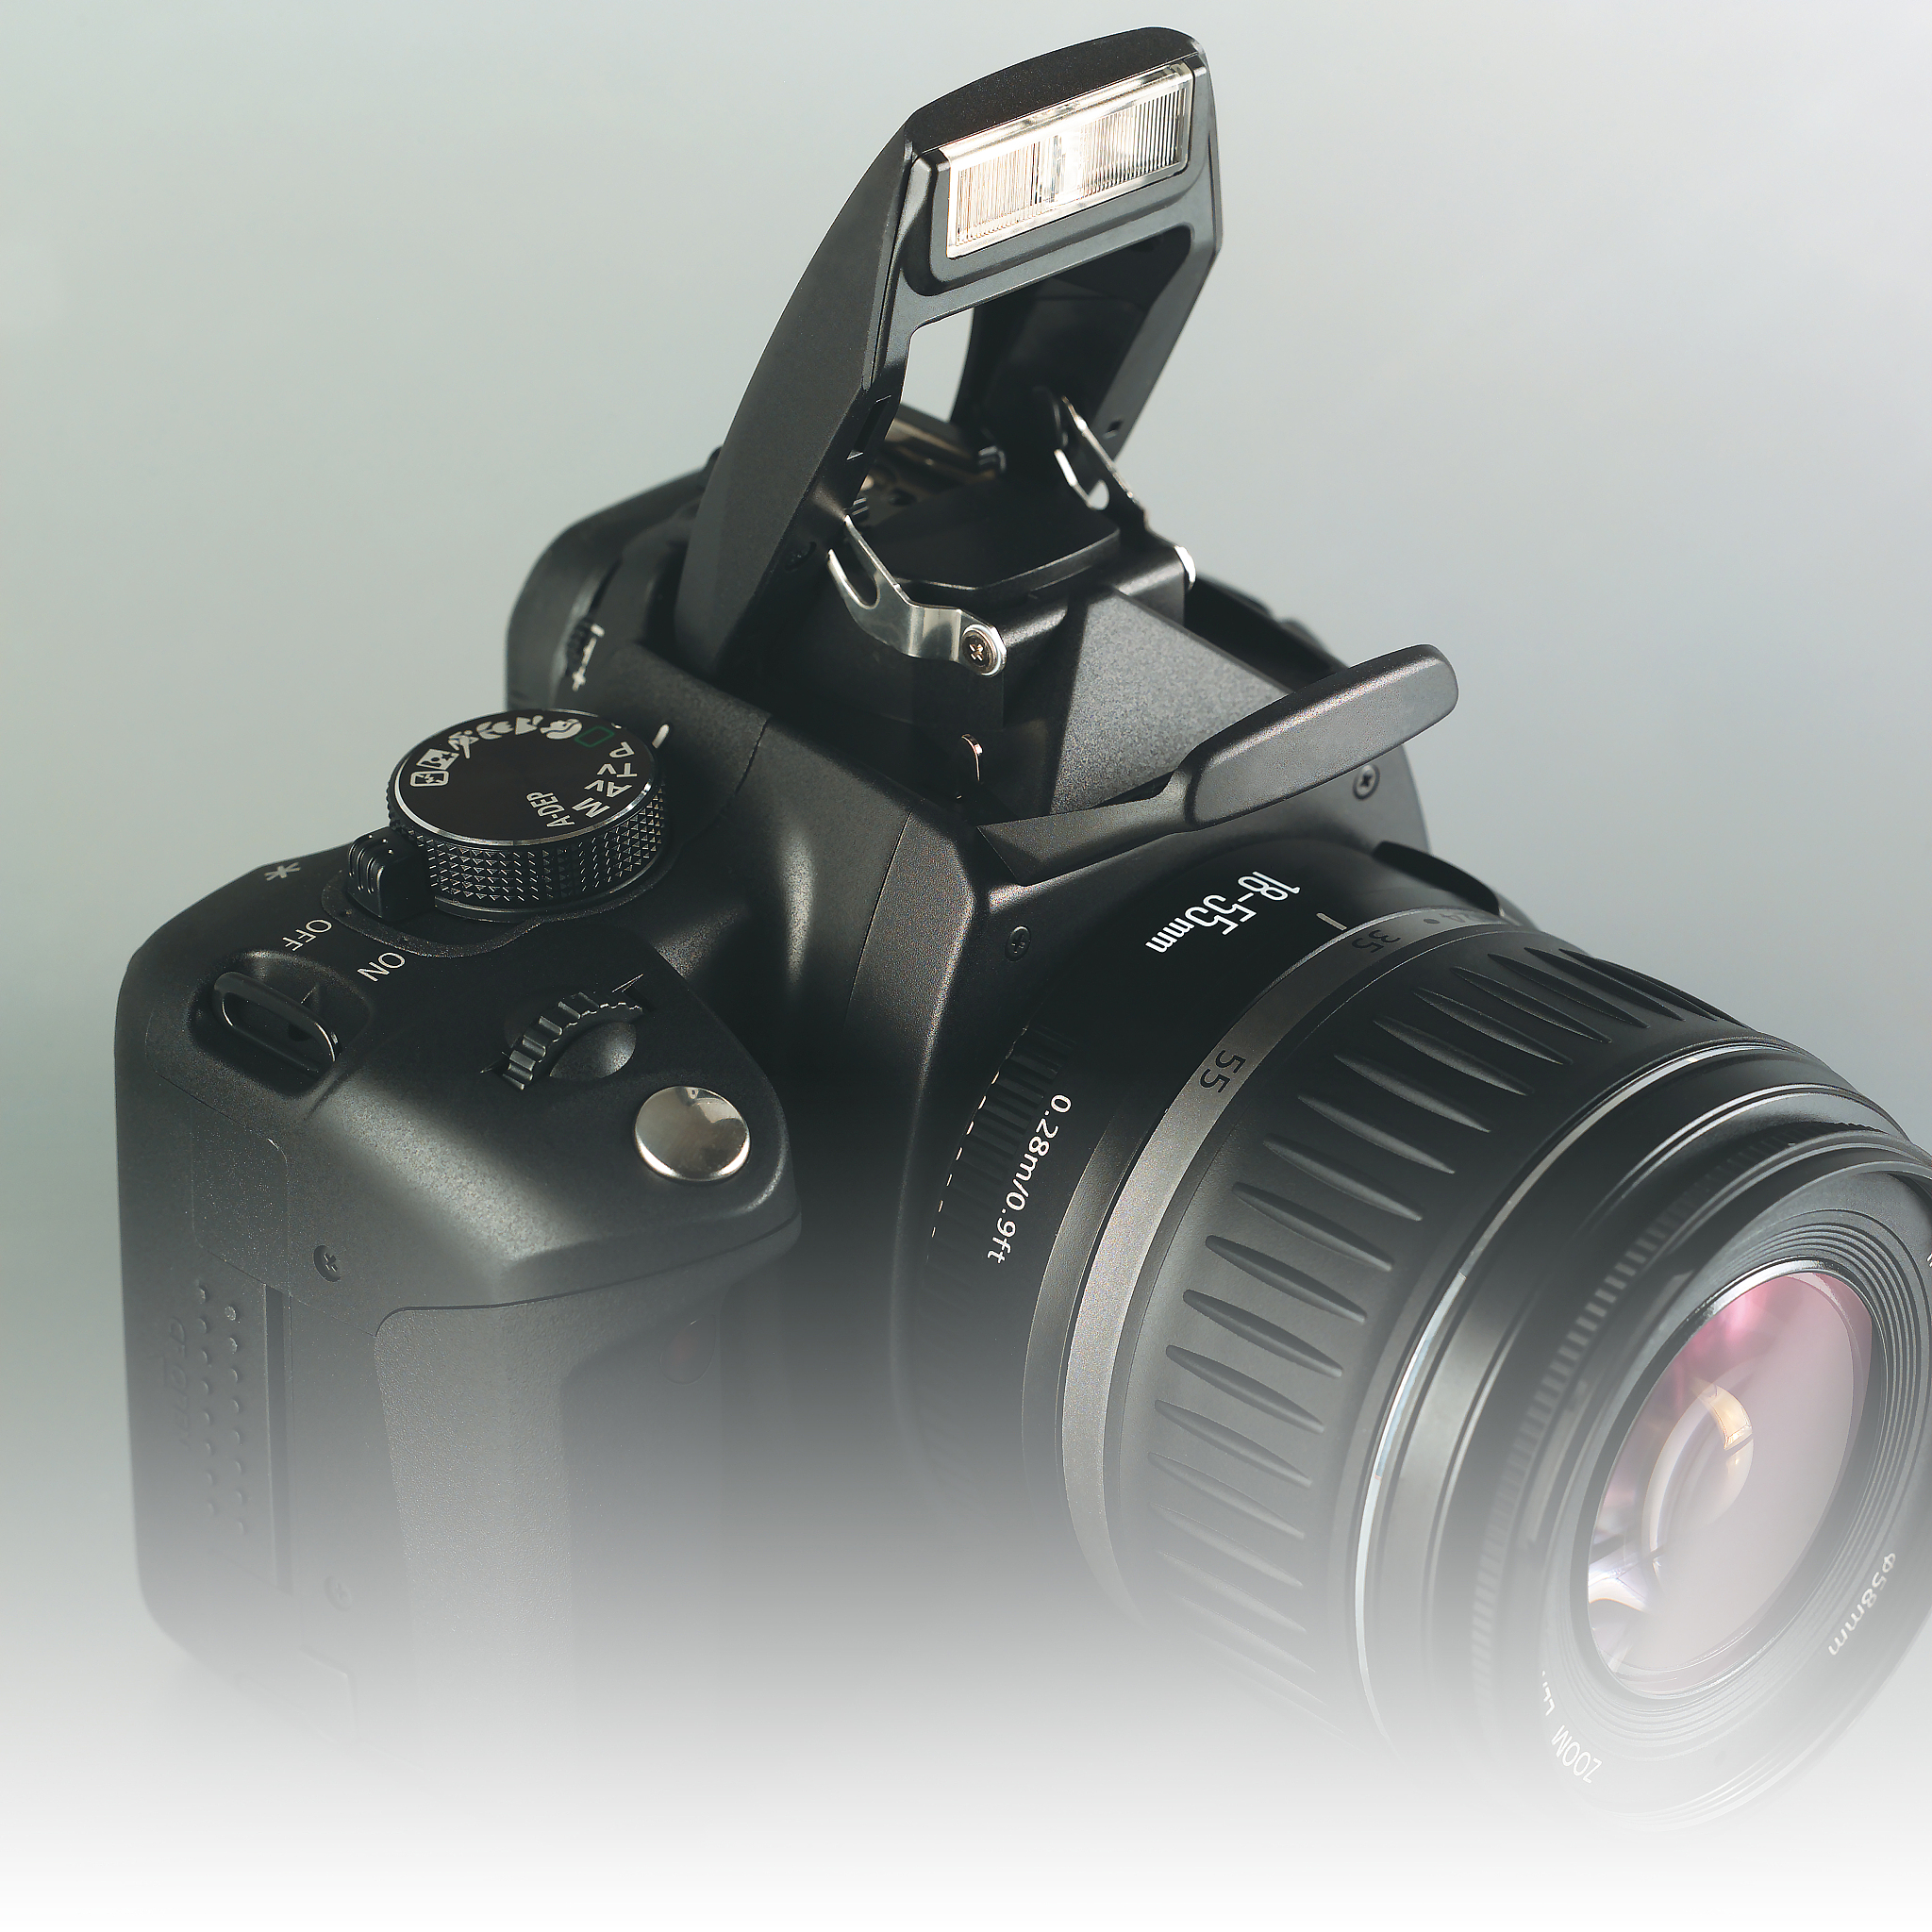 尼康z5 微单相机测评:拍摄质量,操作性能,电池续航等一网打尽